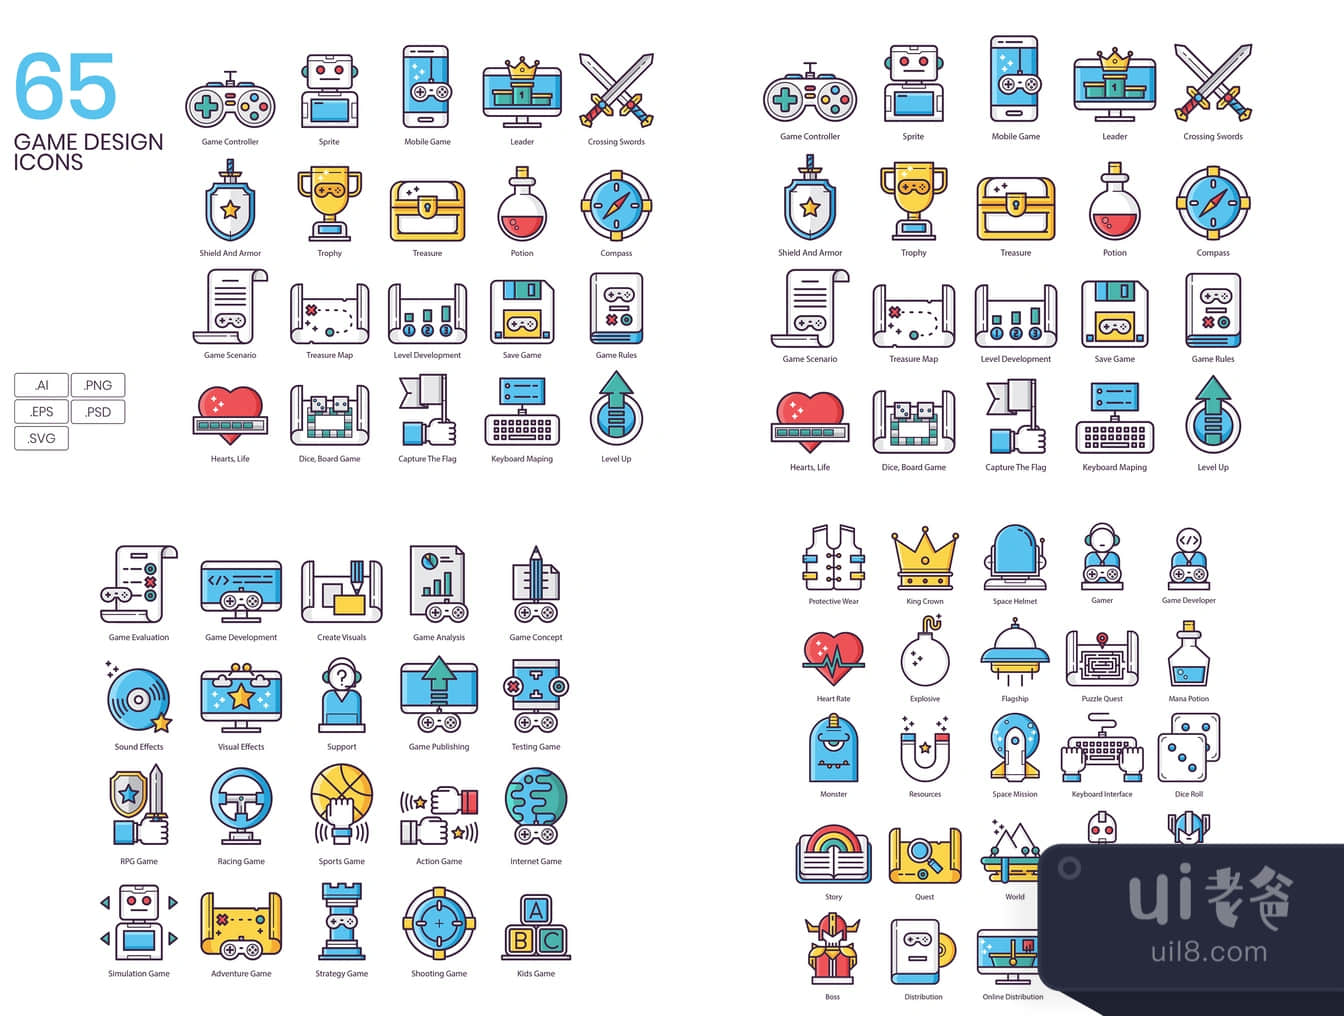 65个游戏设计图标 (65 Game Design Icons)插图